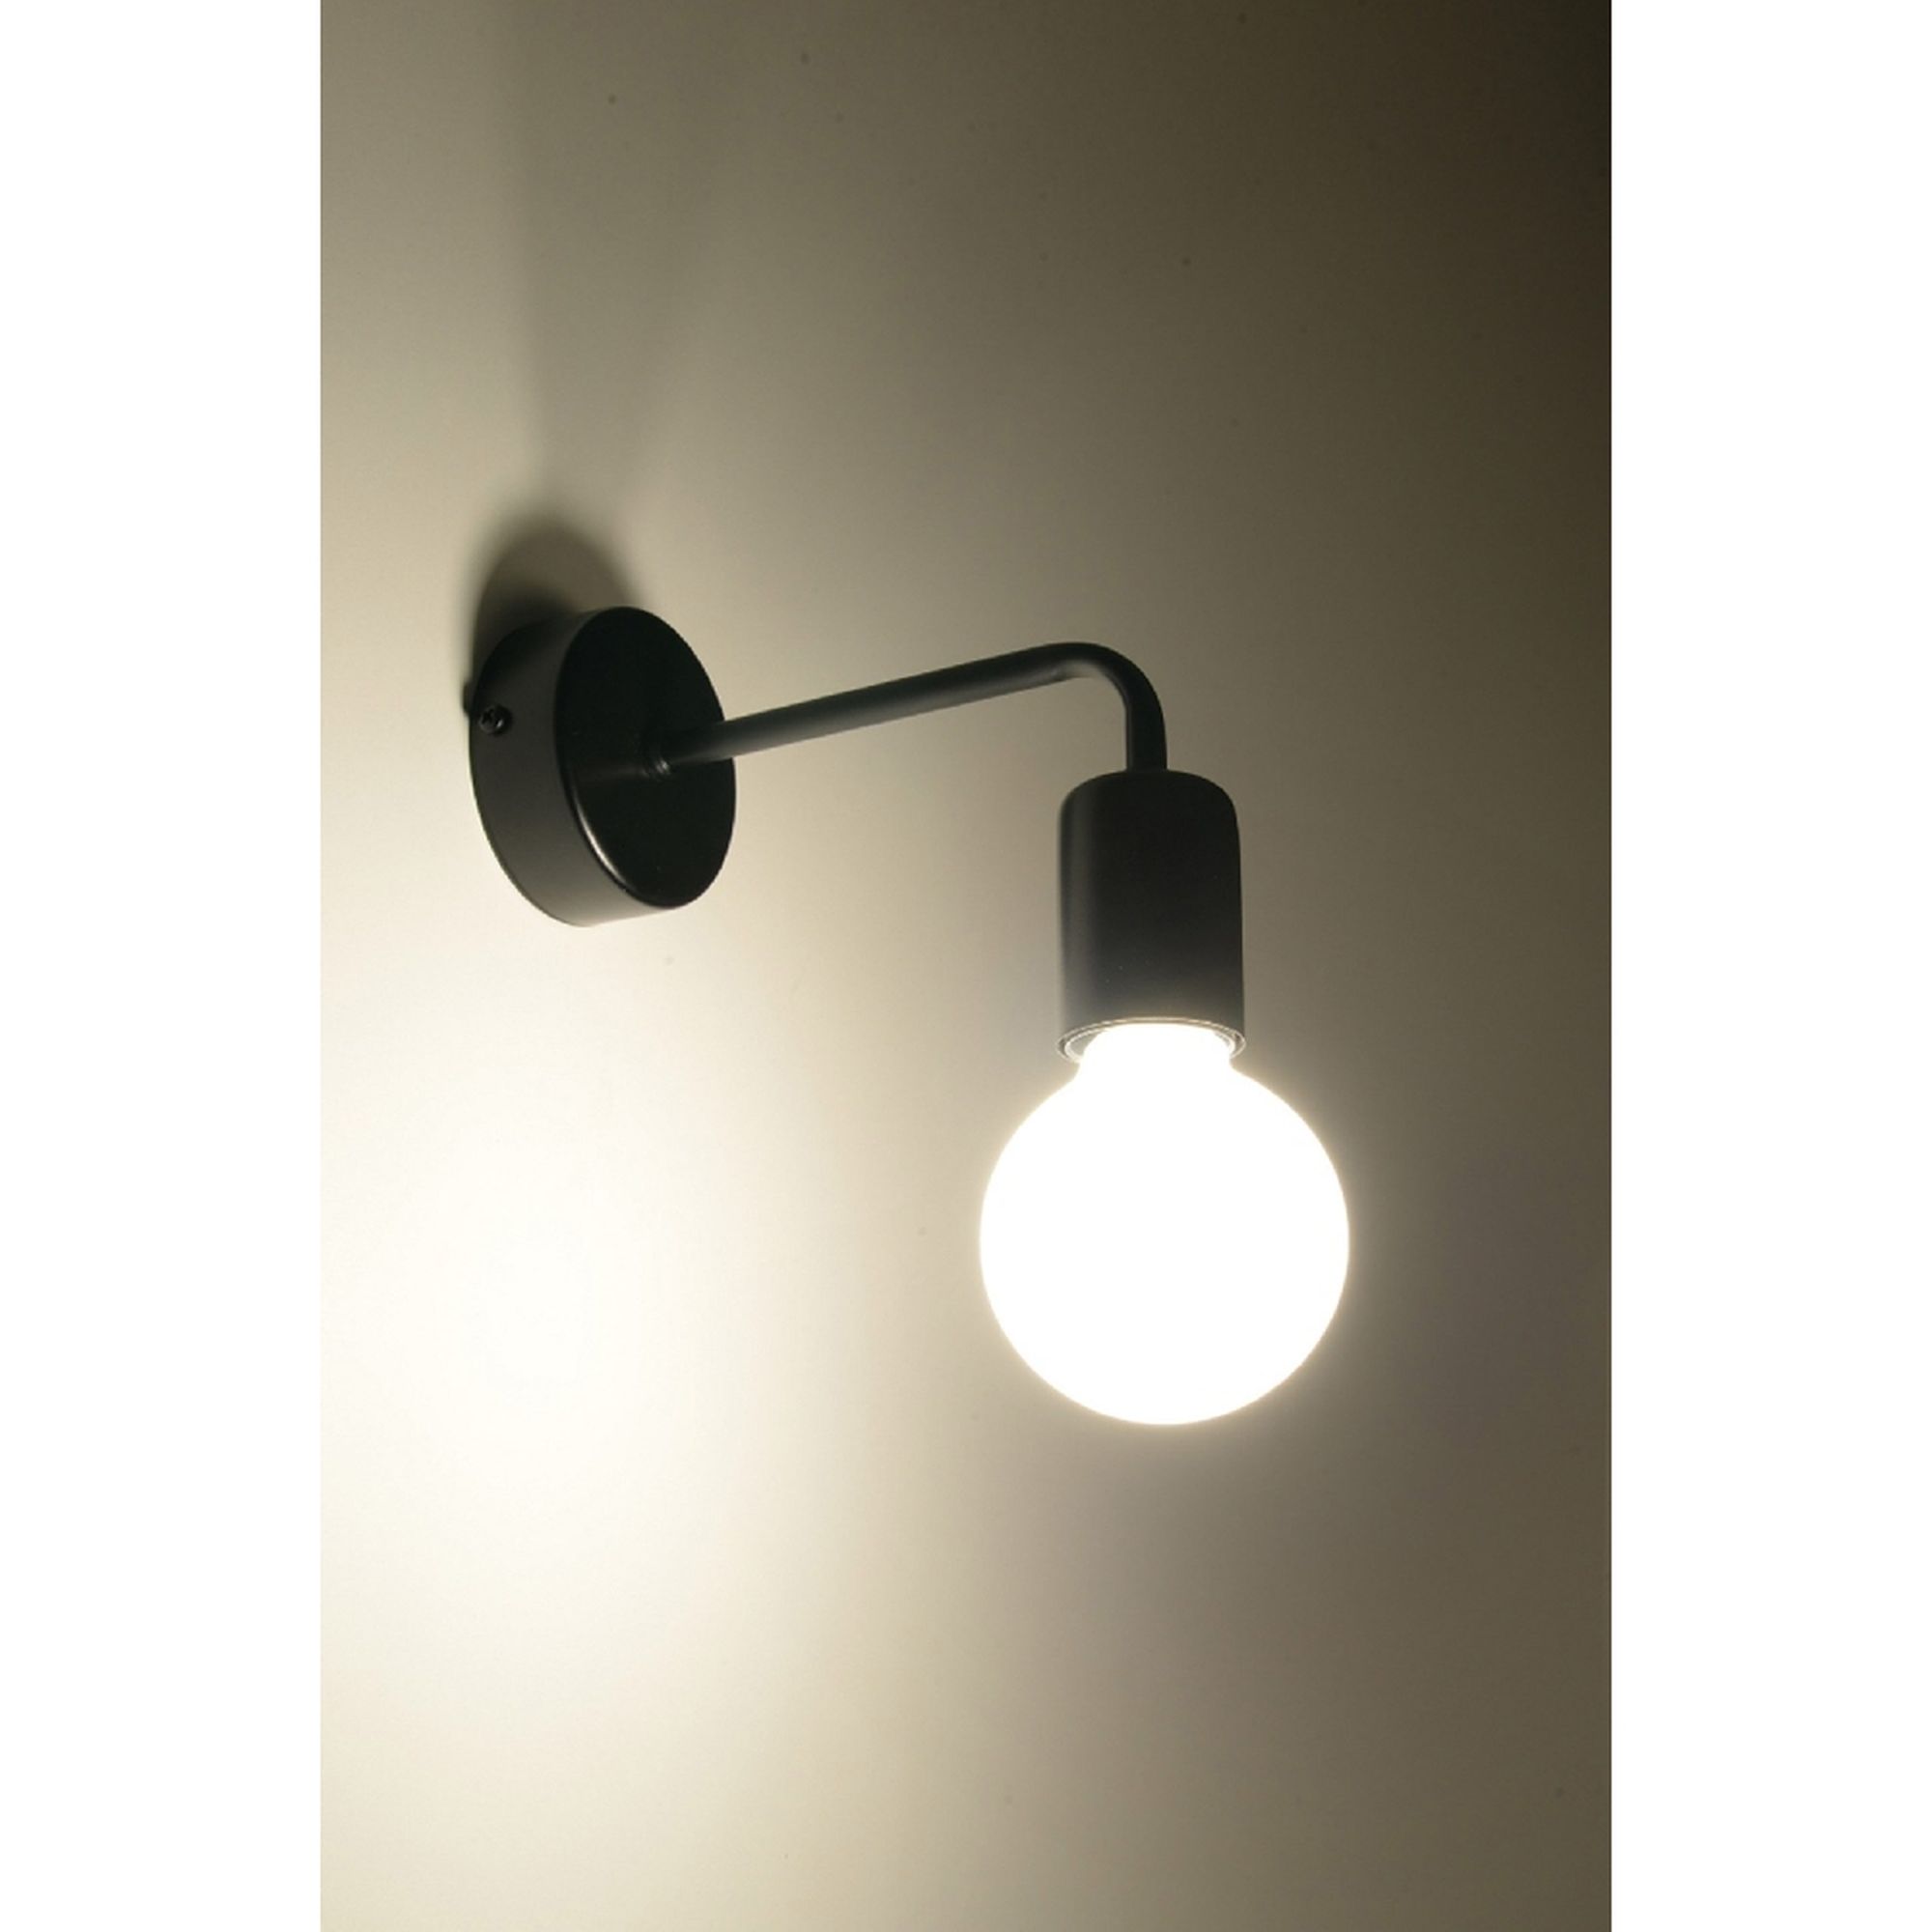 ideal Wandleuchte WOHNLICHT aus E27 für Stahl Wandlampe vintage hängend Industrial-Style schwarz Filament-Leuchte |